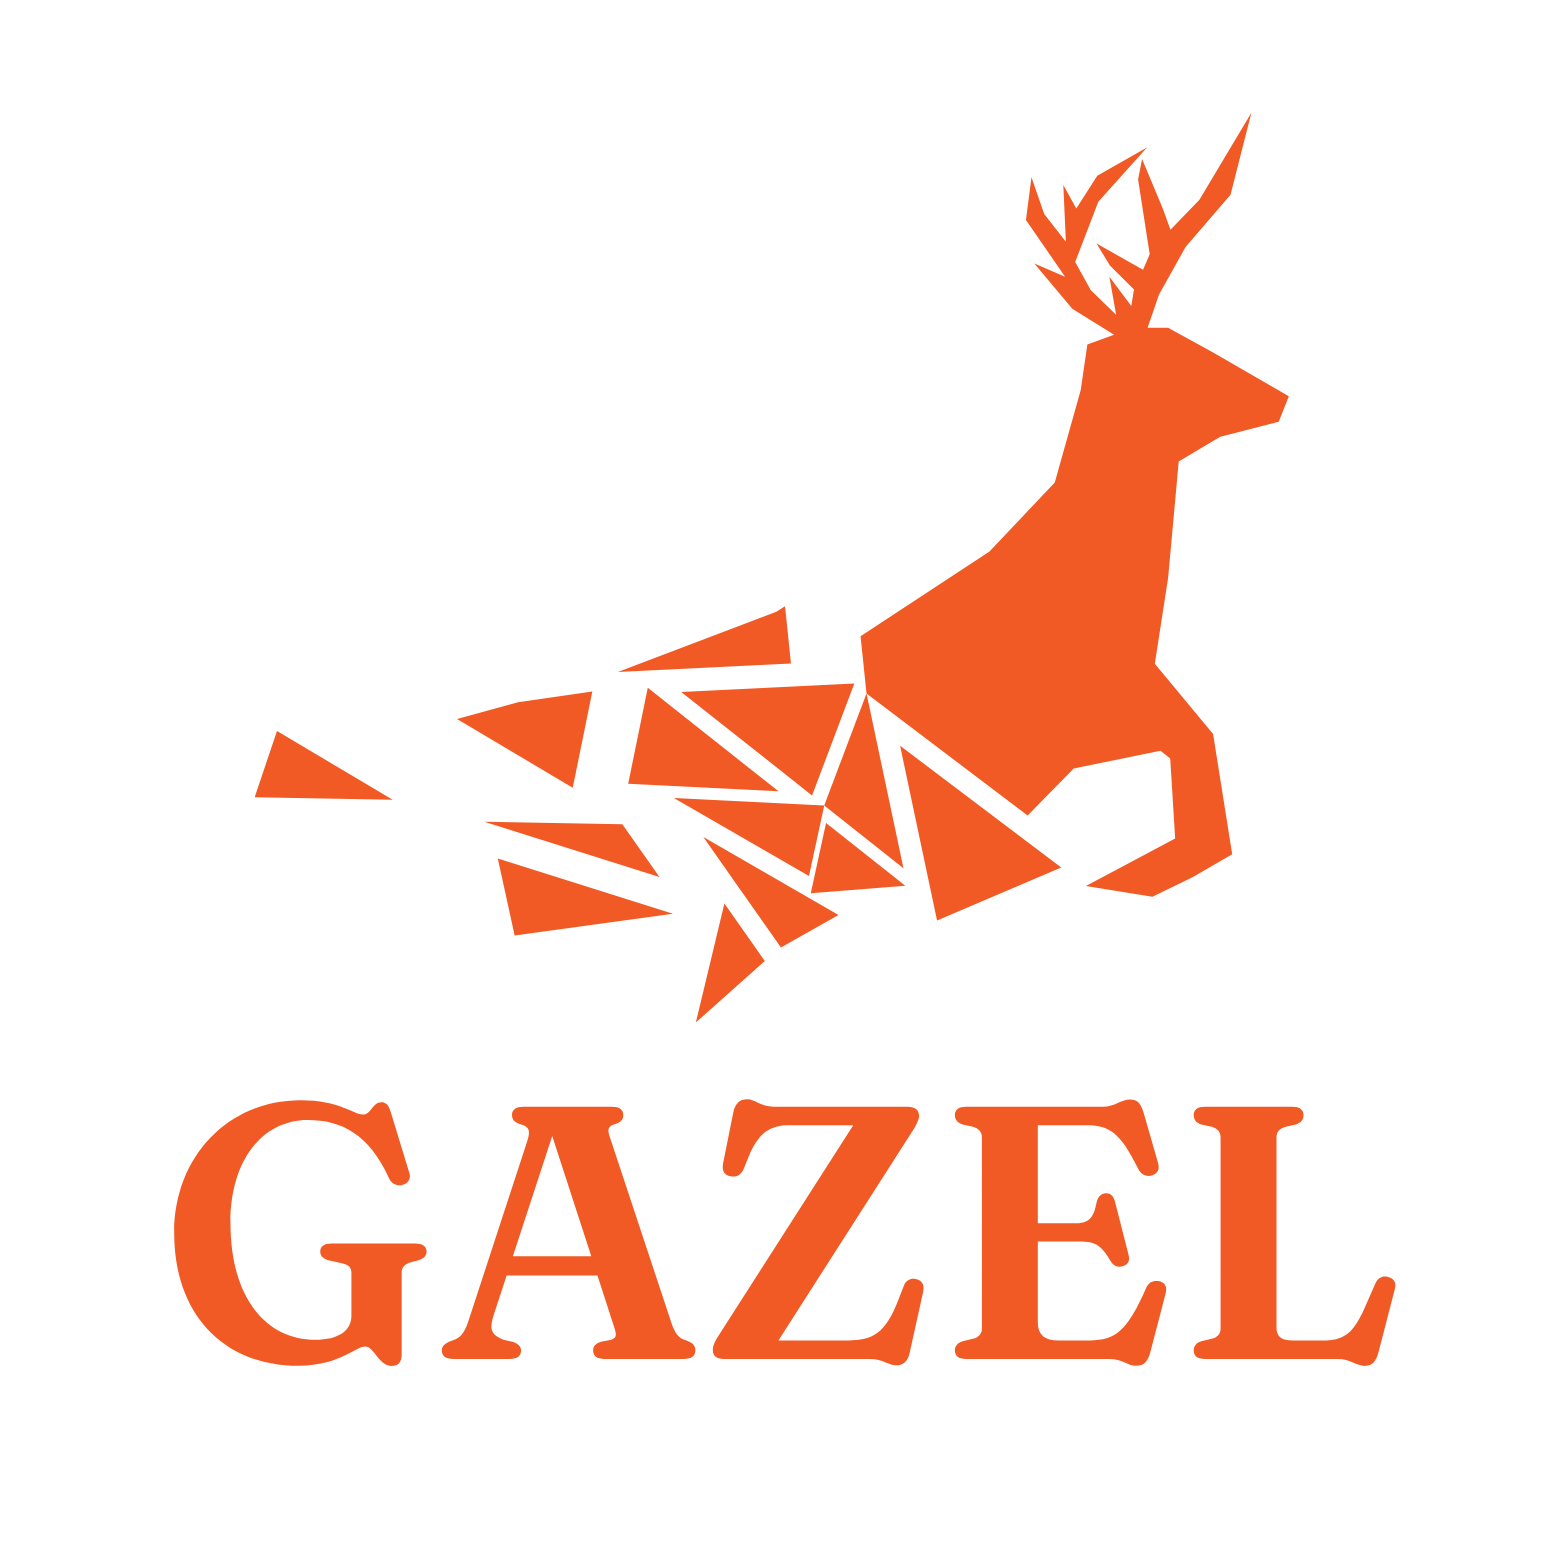 gazel